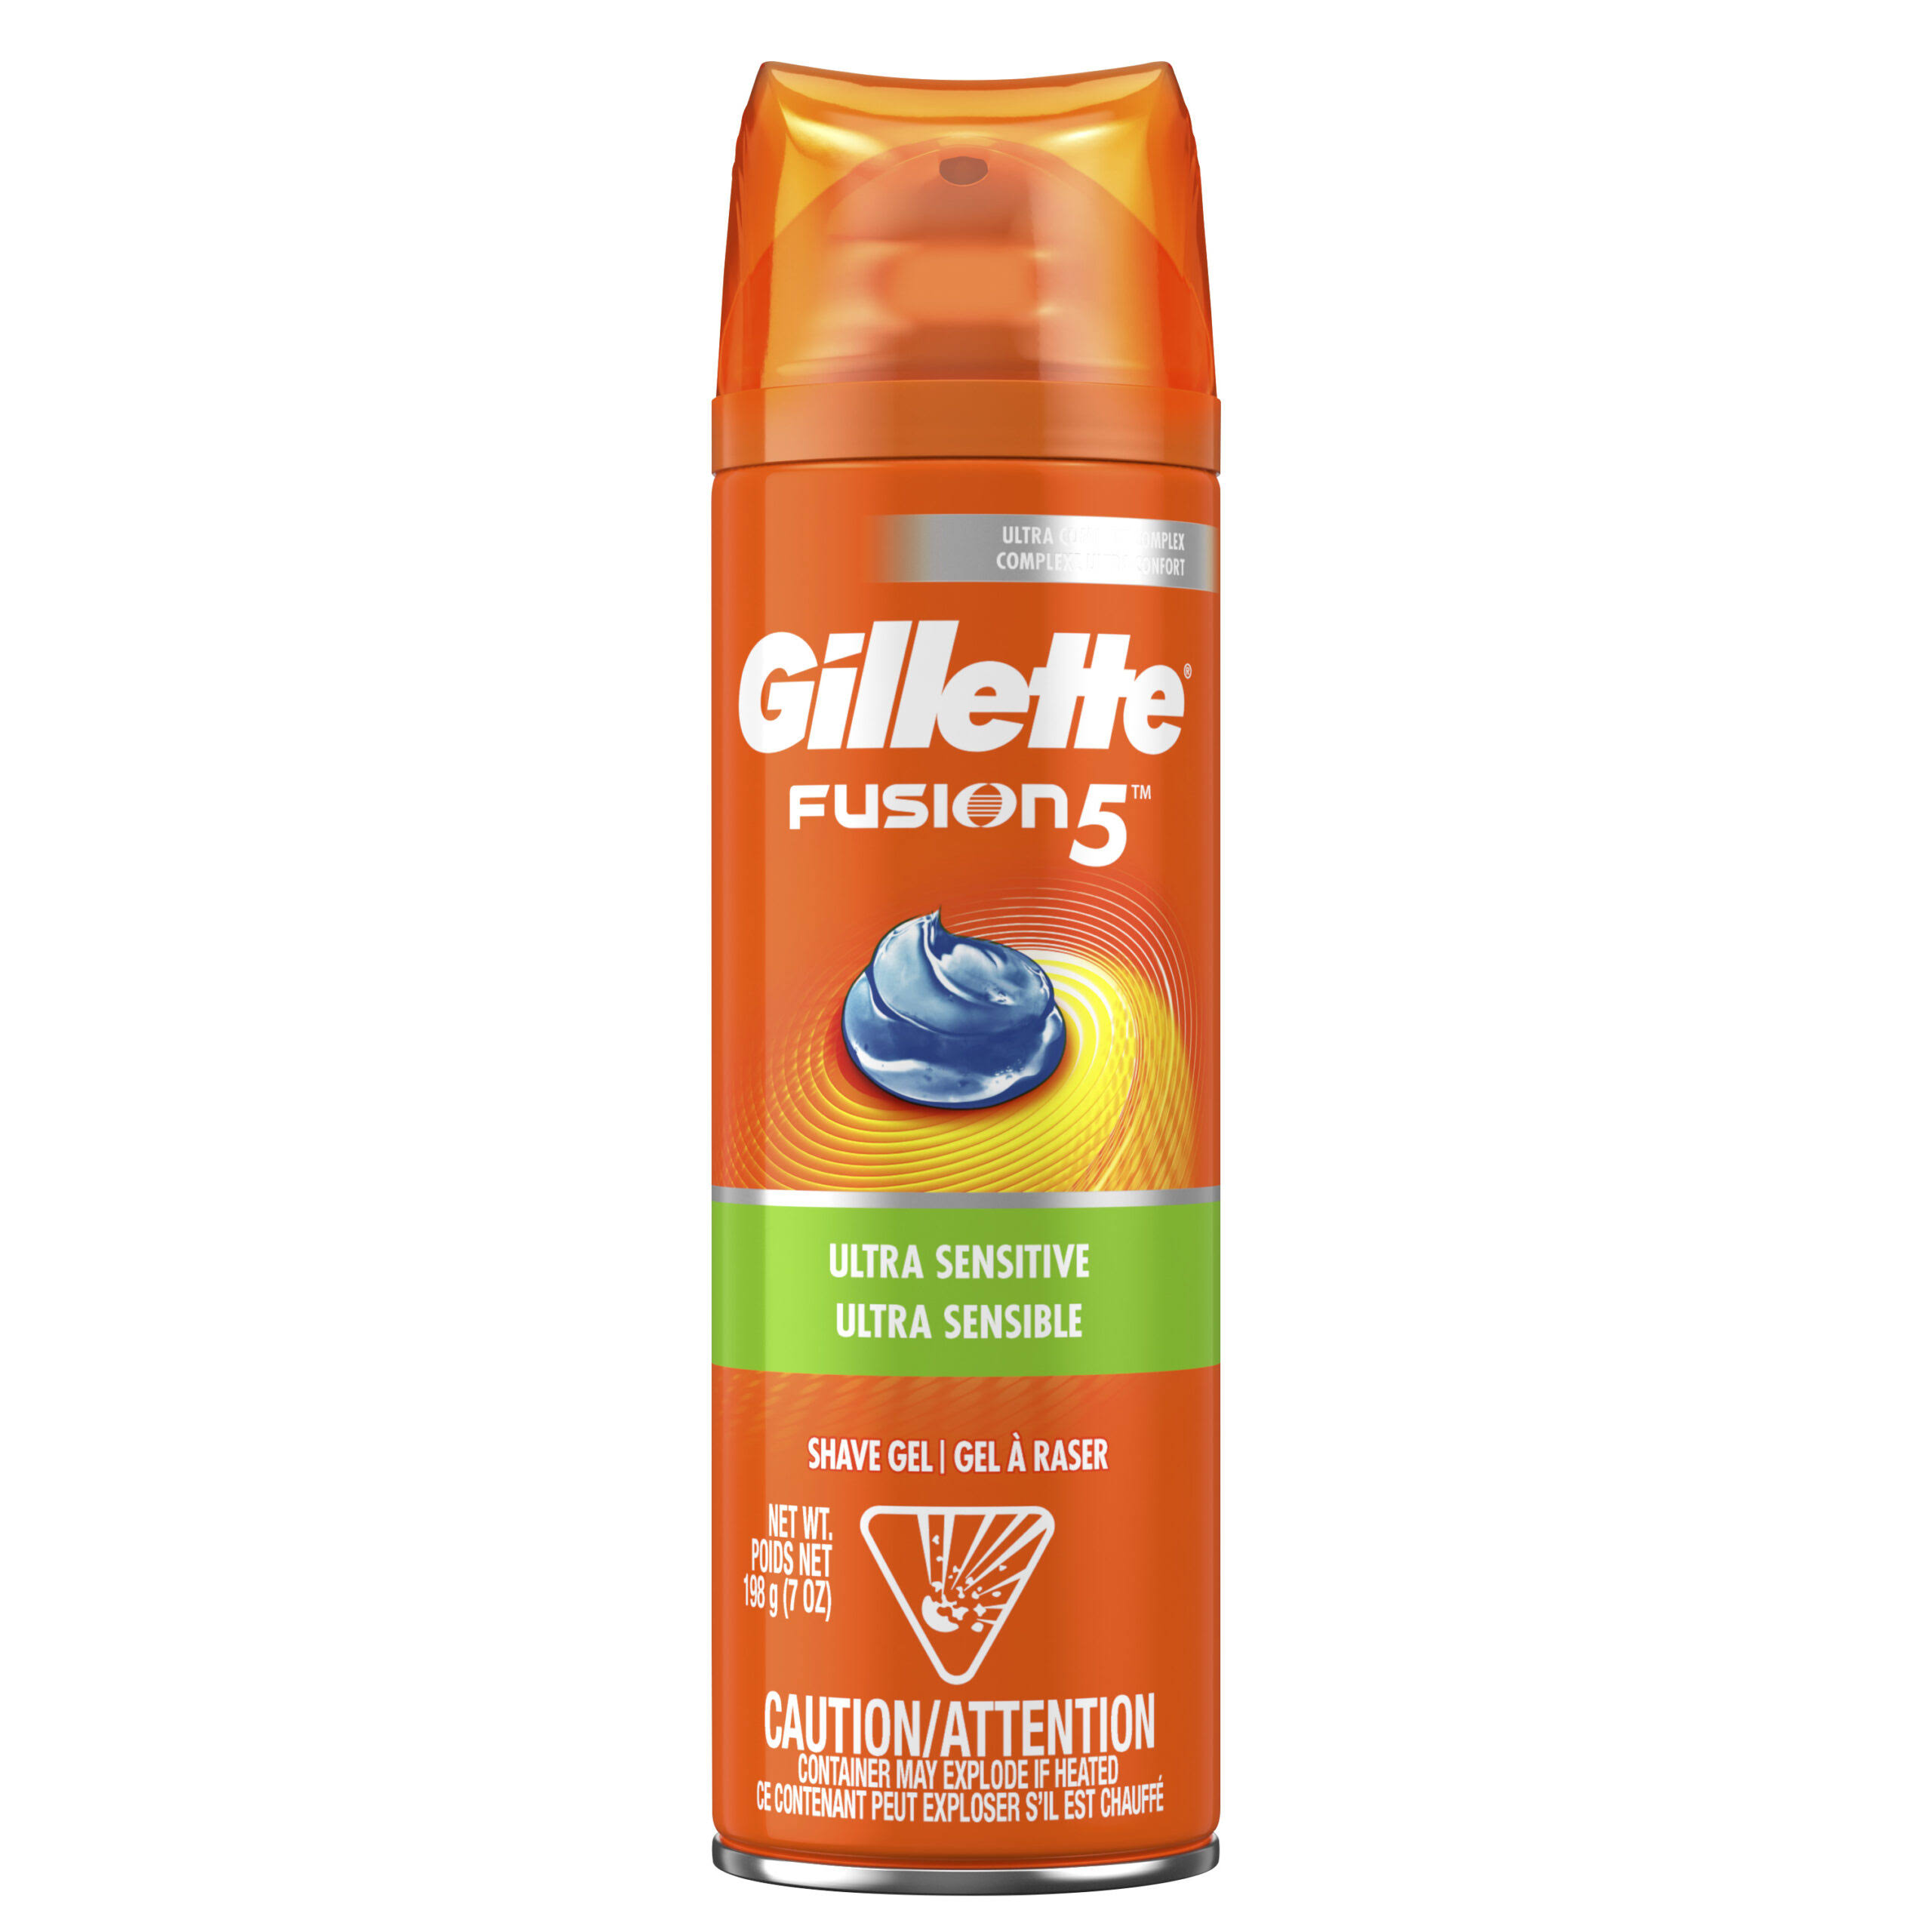 Gillette Fusion Shave Gel - Hydra Gel, Ultra Sensitive, 7oz